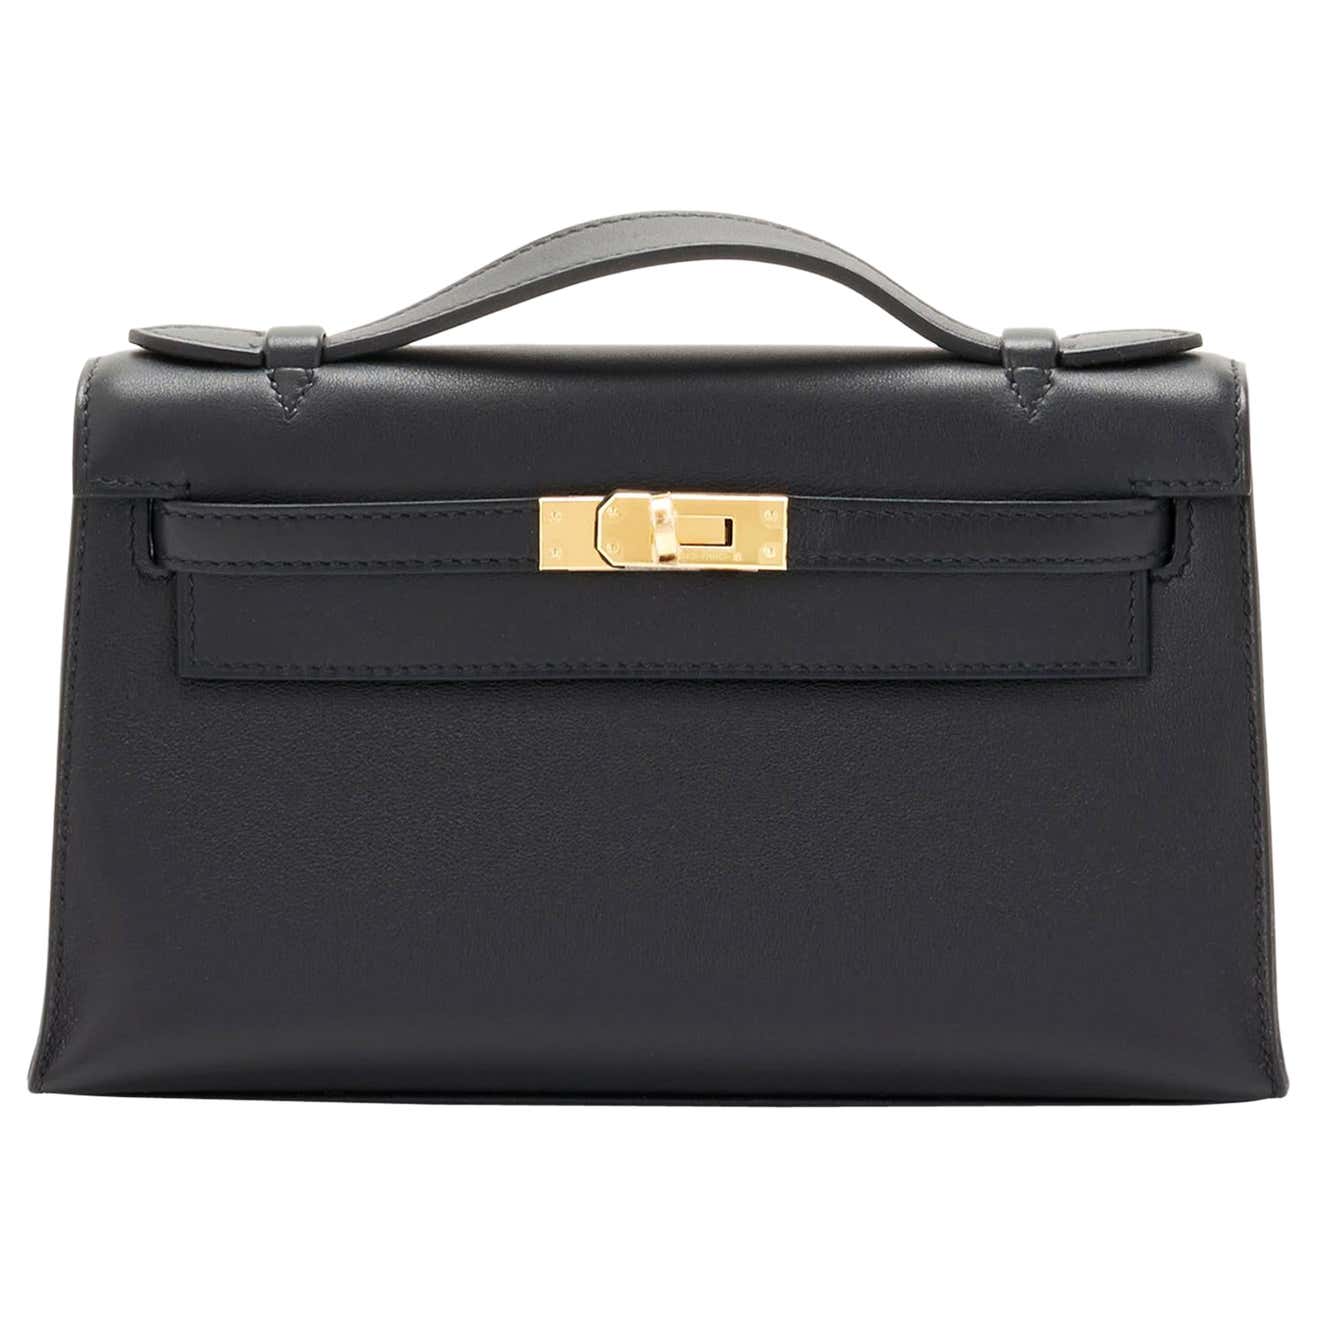 Hermes Kelly Mini Pochette Bag Epsom Leather Gold Hardware In Orange